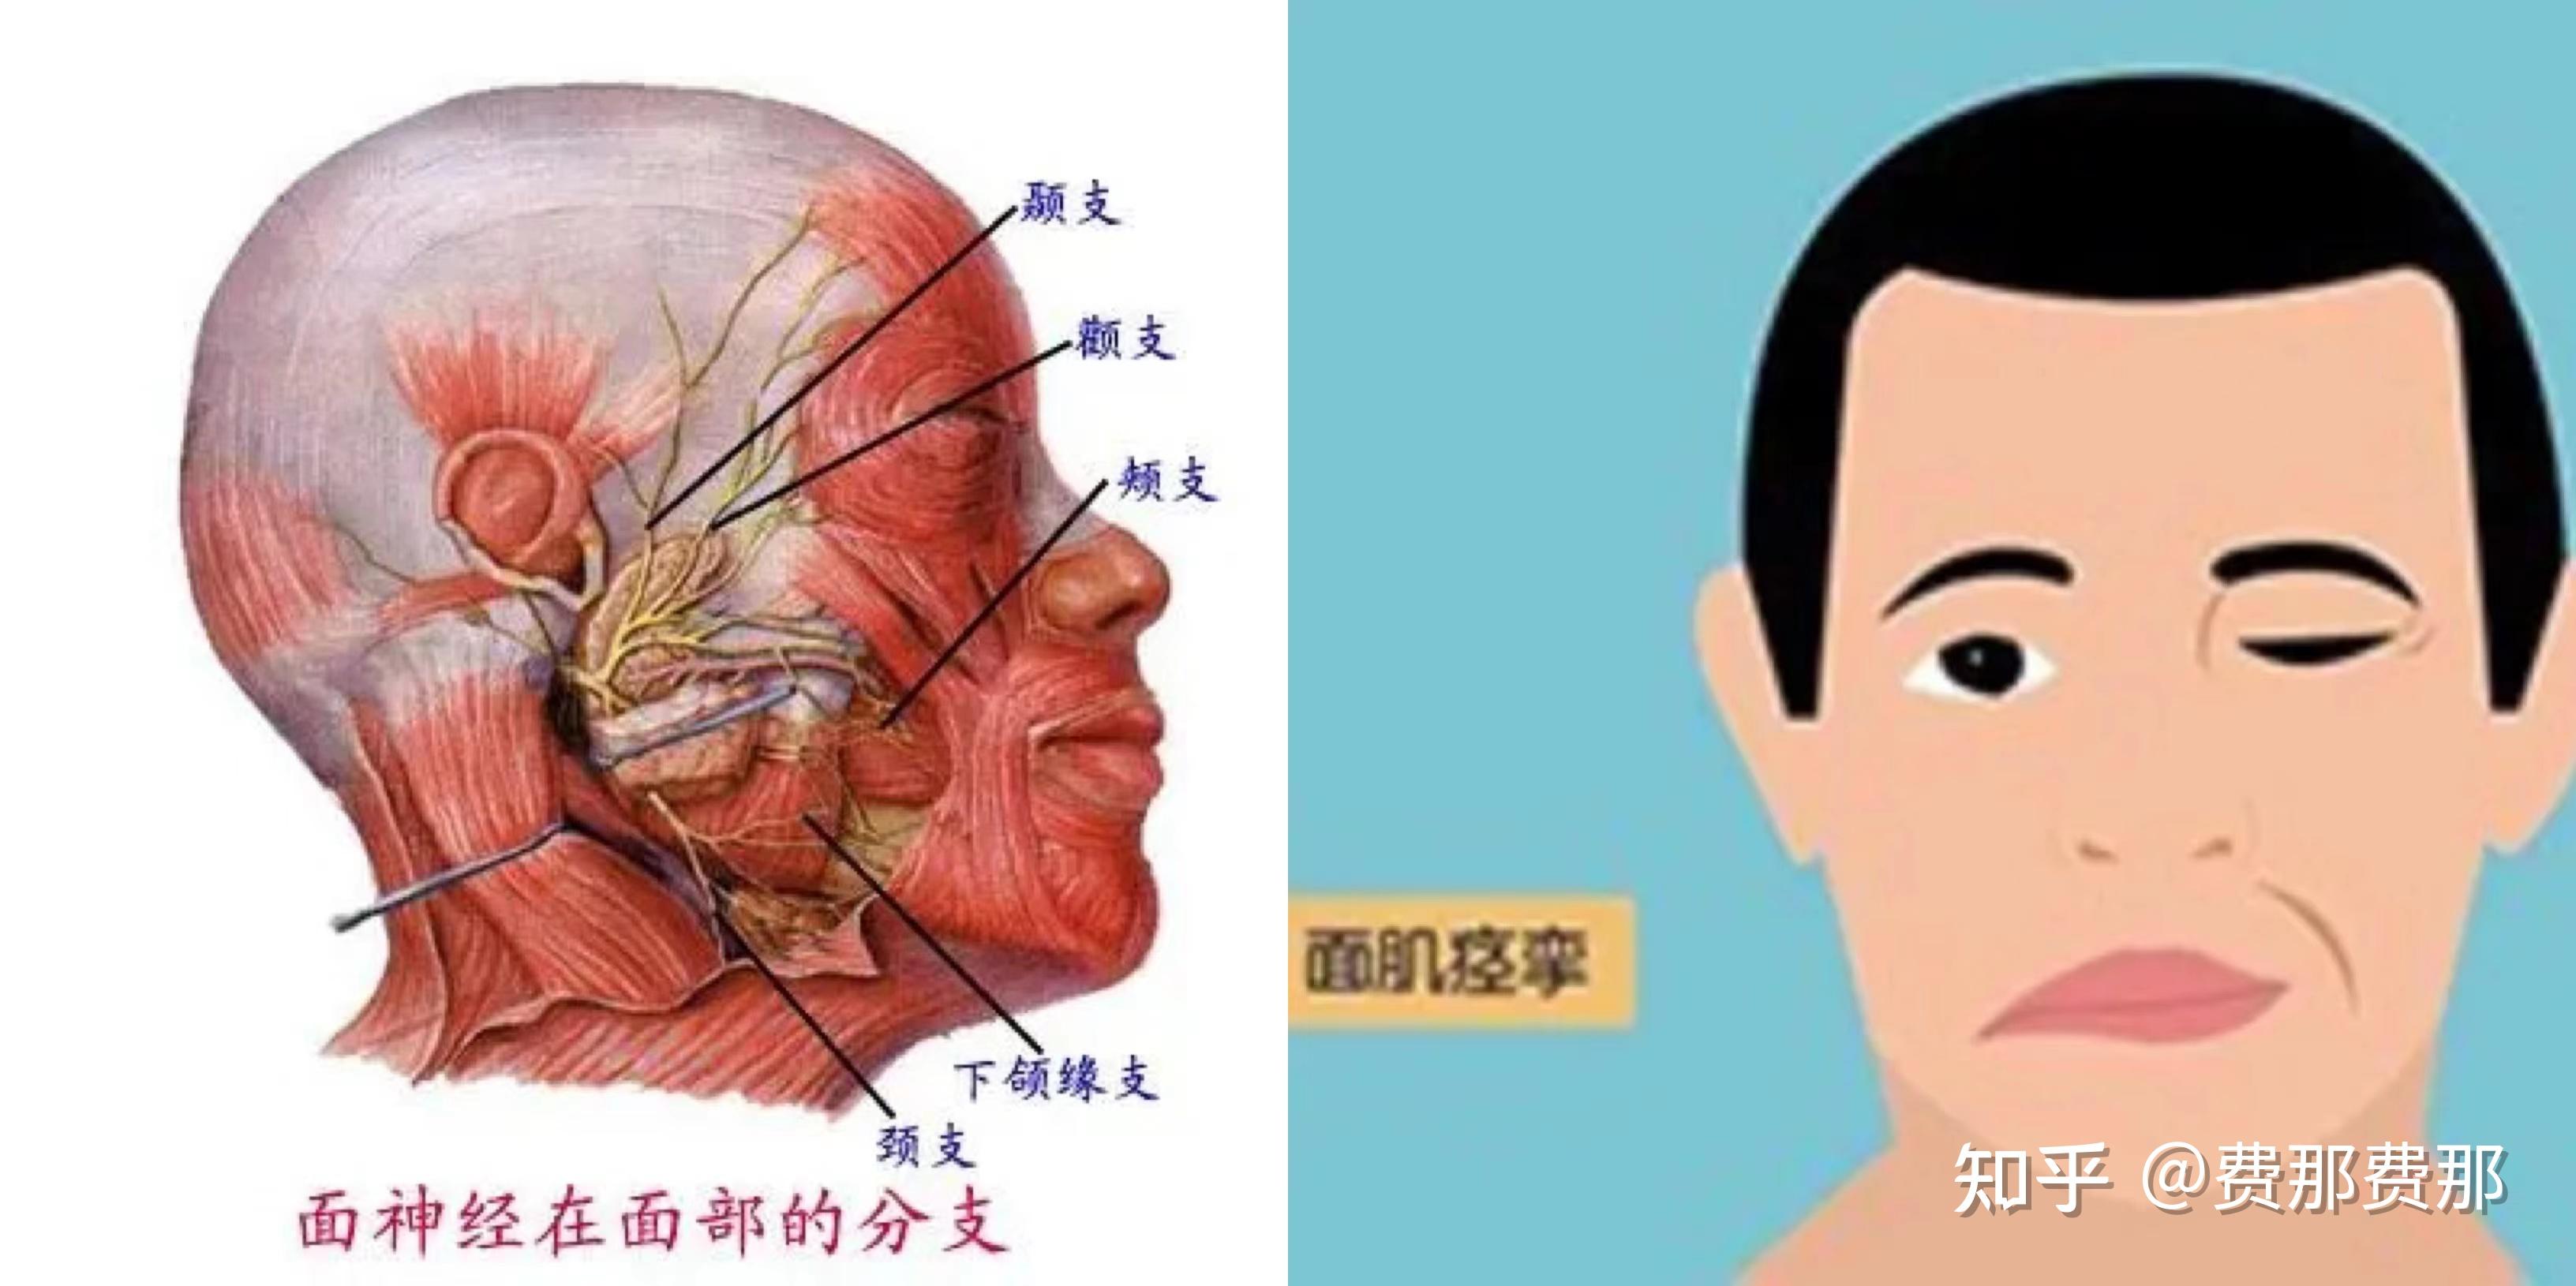 面肌痉挛常表现为一侧面部不自主抽搐,起病多从眼轮匝肌开始单侧眼皮